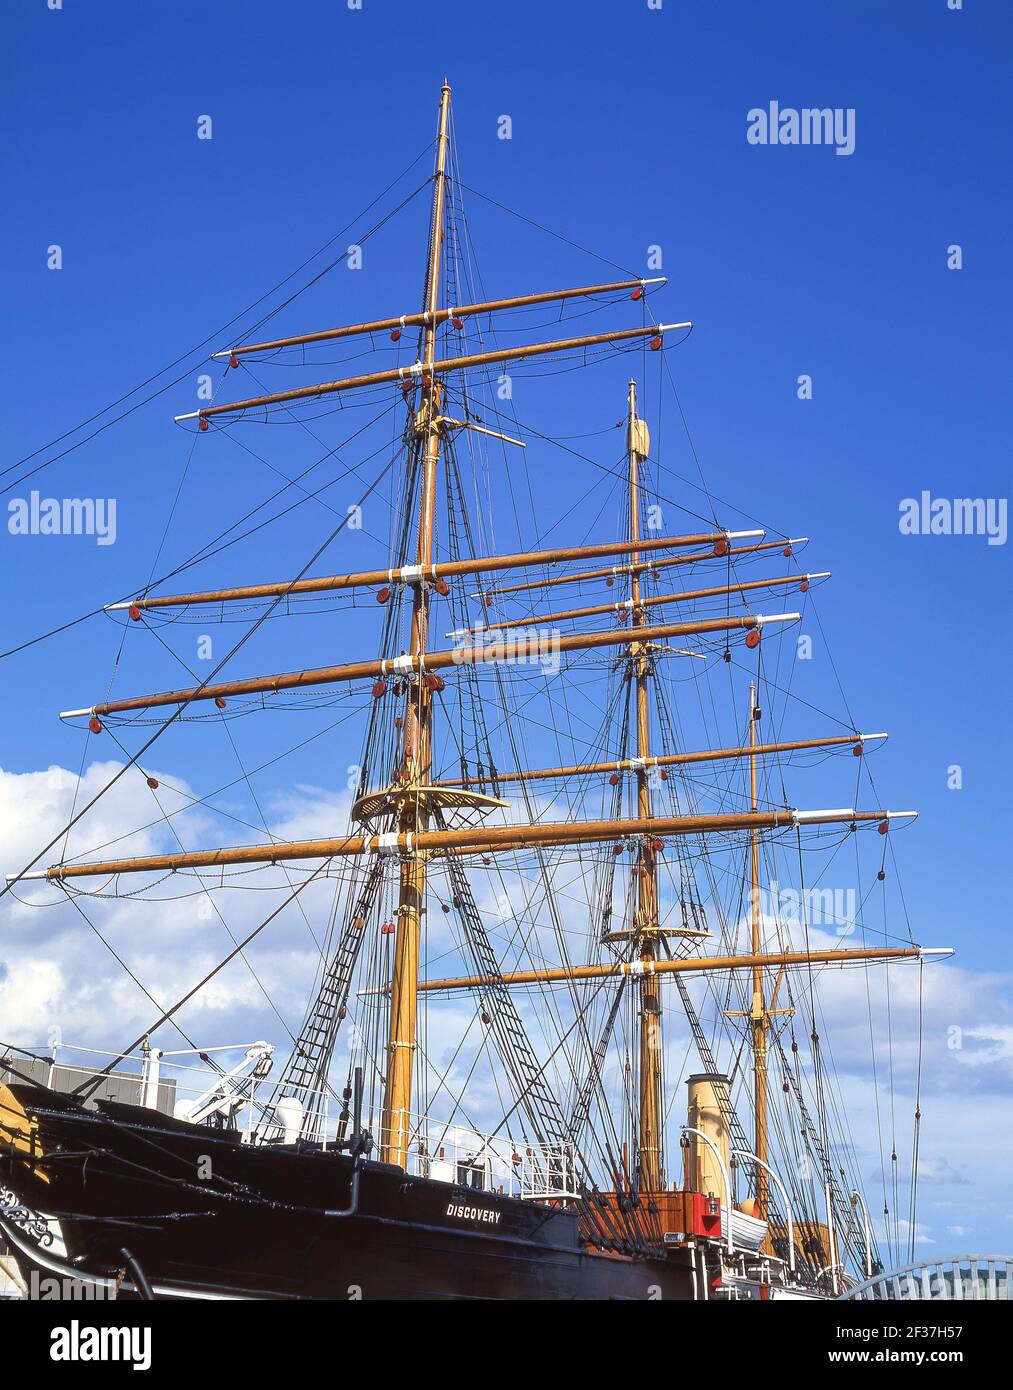 Le Capitaine Scott's HMS.Découverte de bateau, Victoria Dock, Dundee, Ville de Dundee, Ecosse, Royaume-Uni Banque D'Images